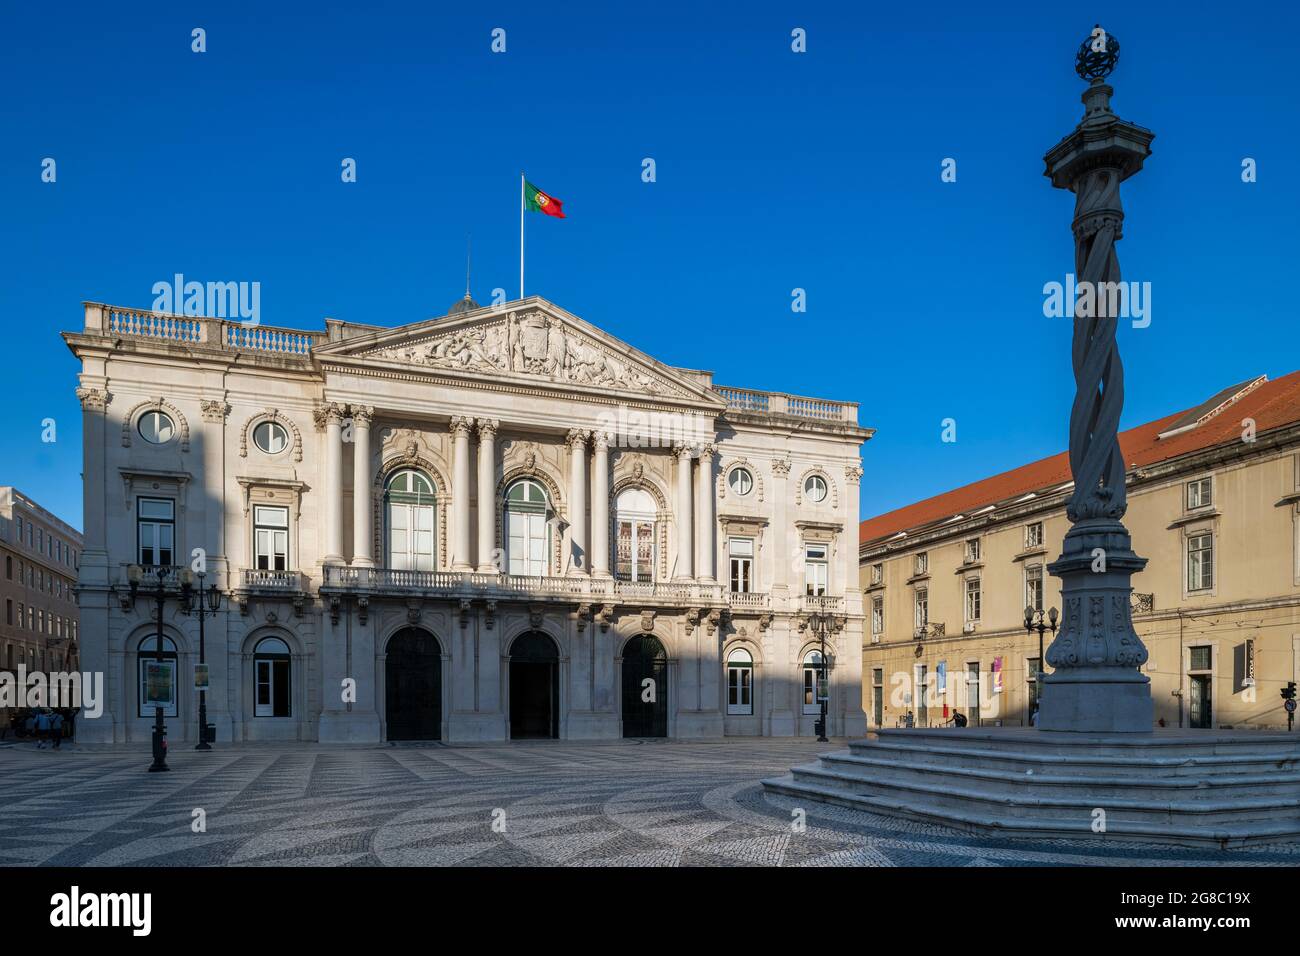 Lisbonne, Portugal - 16 juillet 2021 : vue sur la place municipale (Praca do Municipio) avec l'hôtel de ville, à Lisbonne, Portugal Banque D'Images